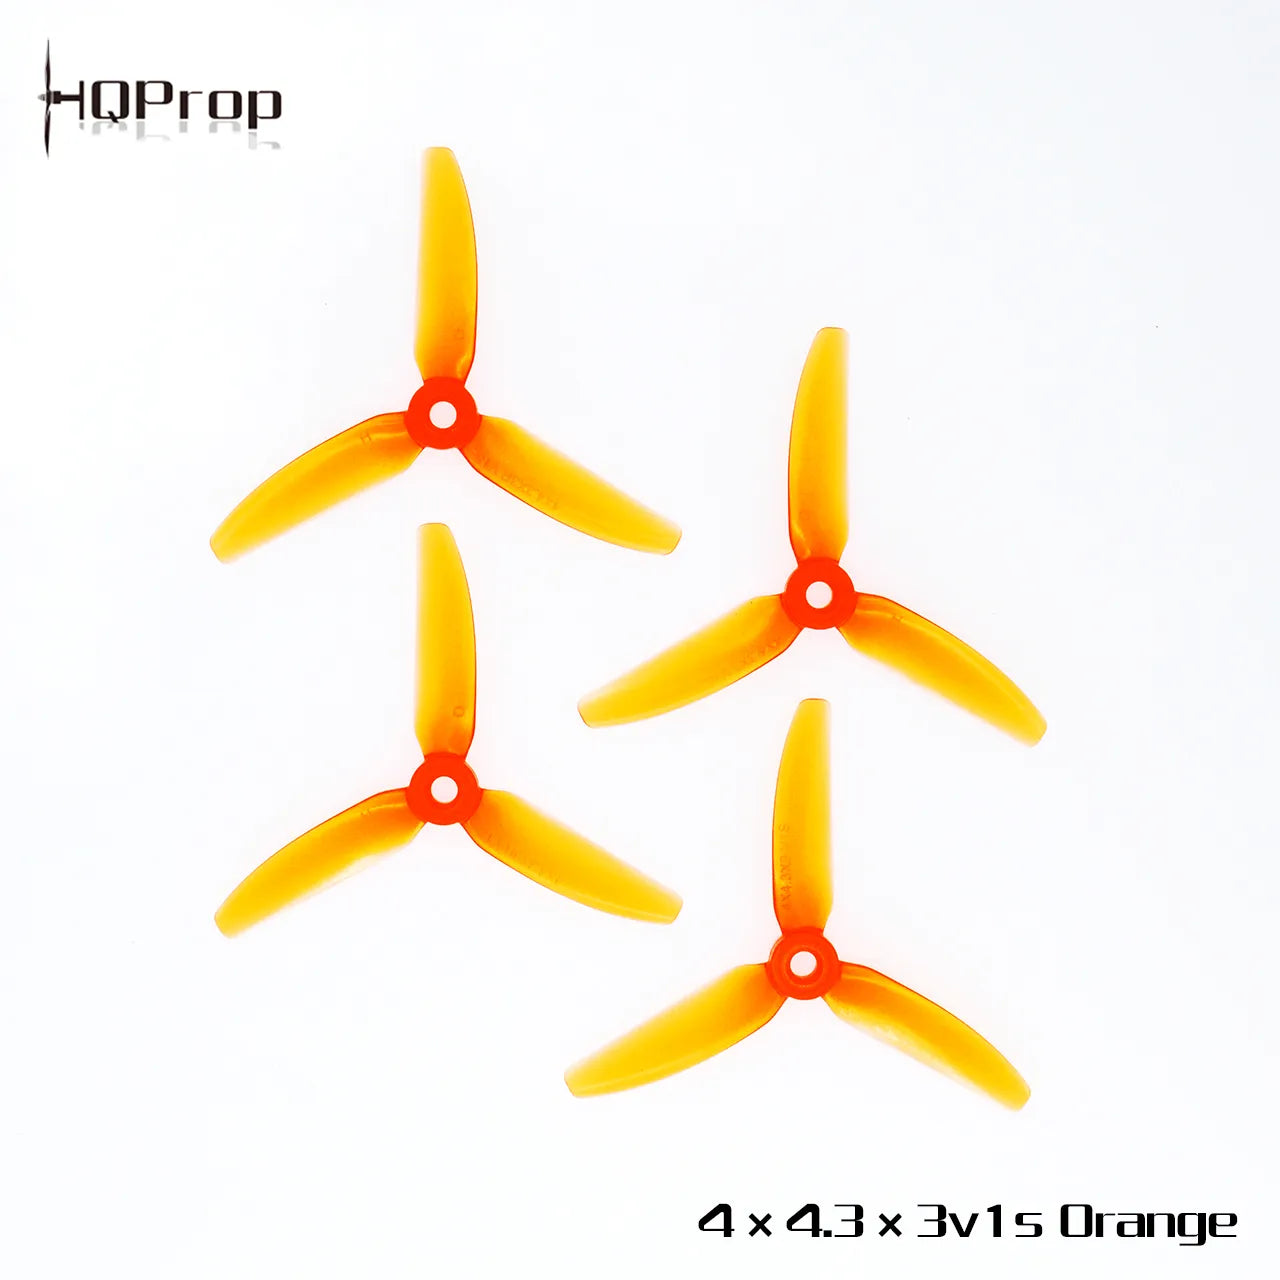 HQProp 4X4.3X3V1S - DroneDynamics.ca